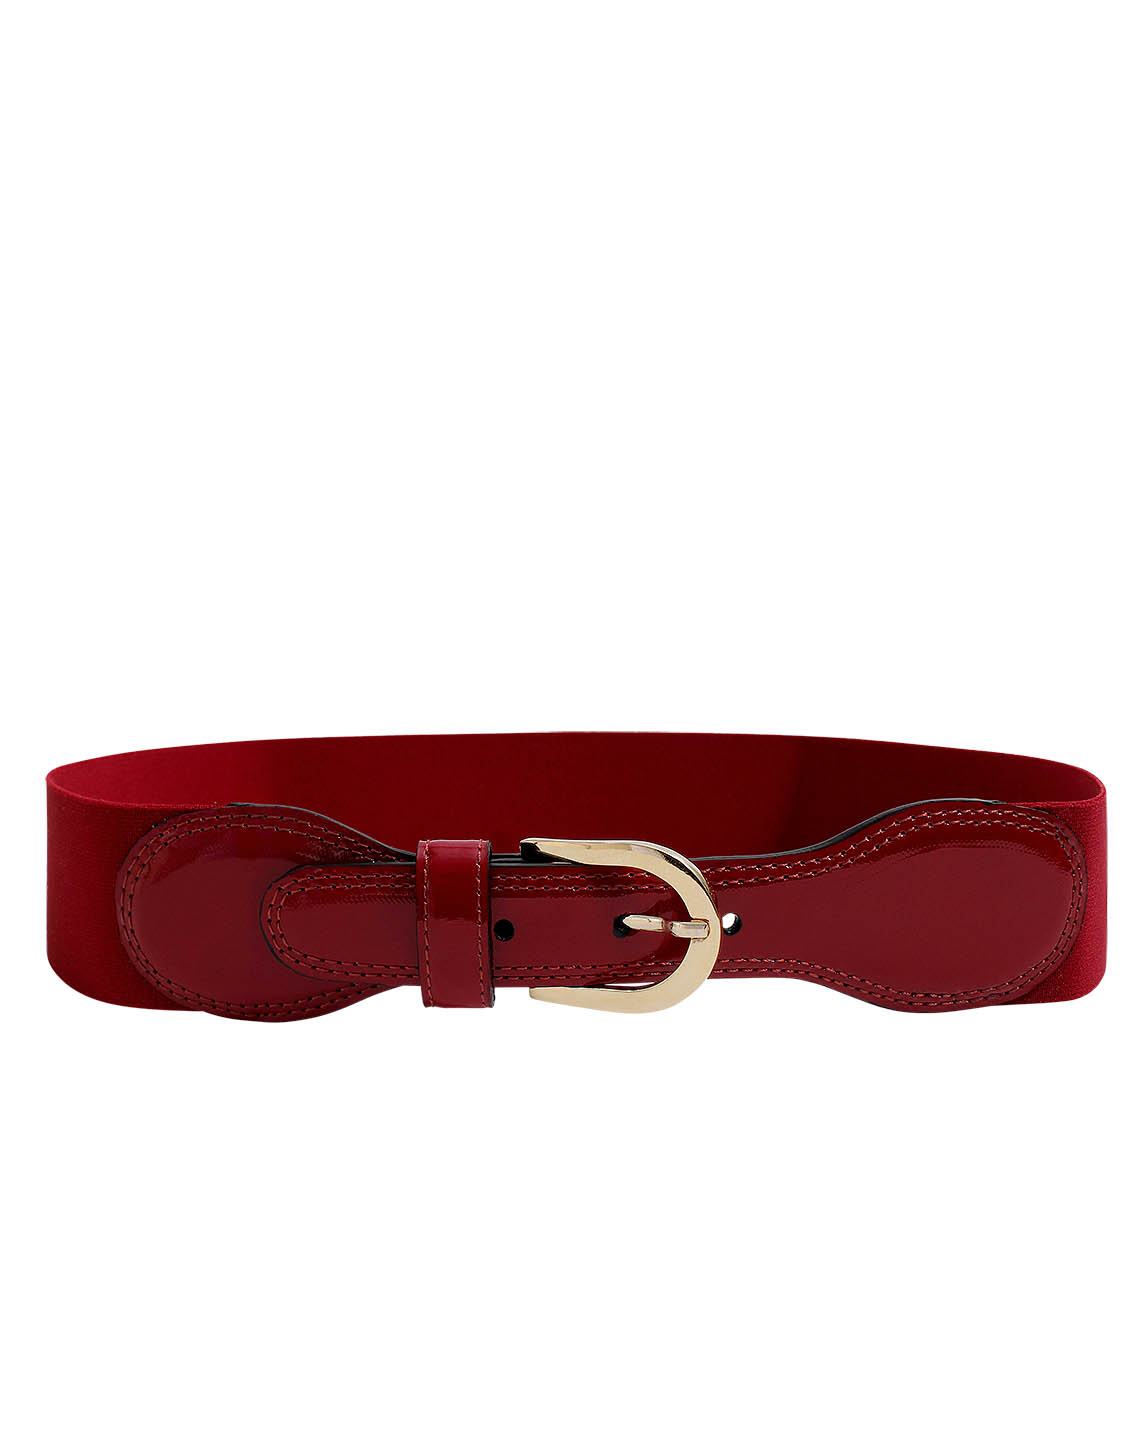 Cinturón Mujer S-0590 Color Rojo